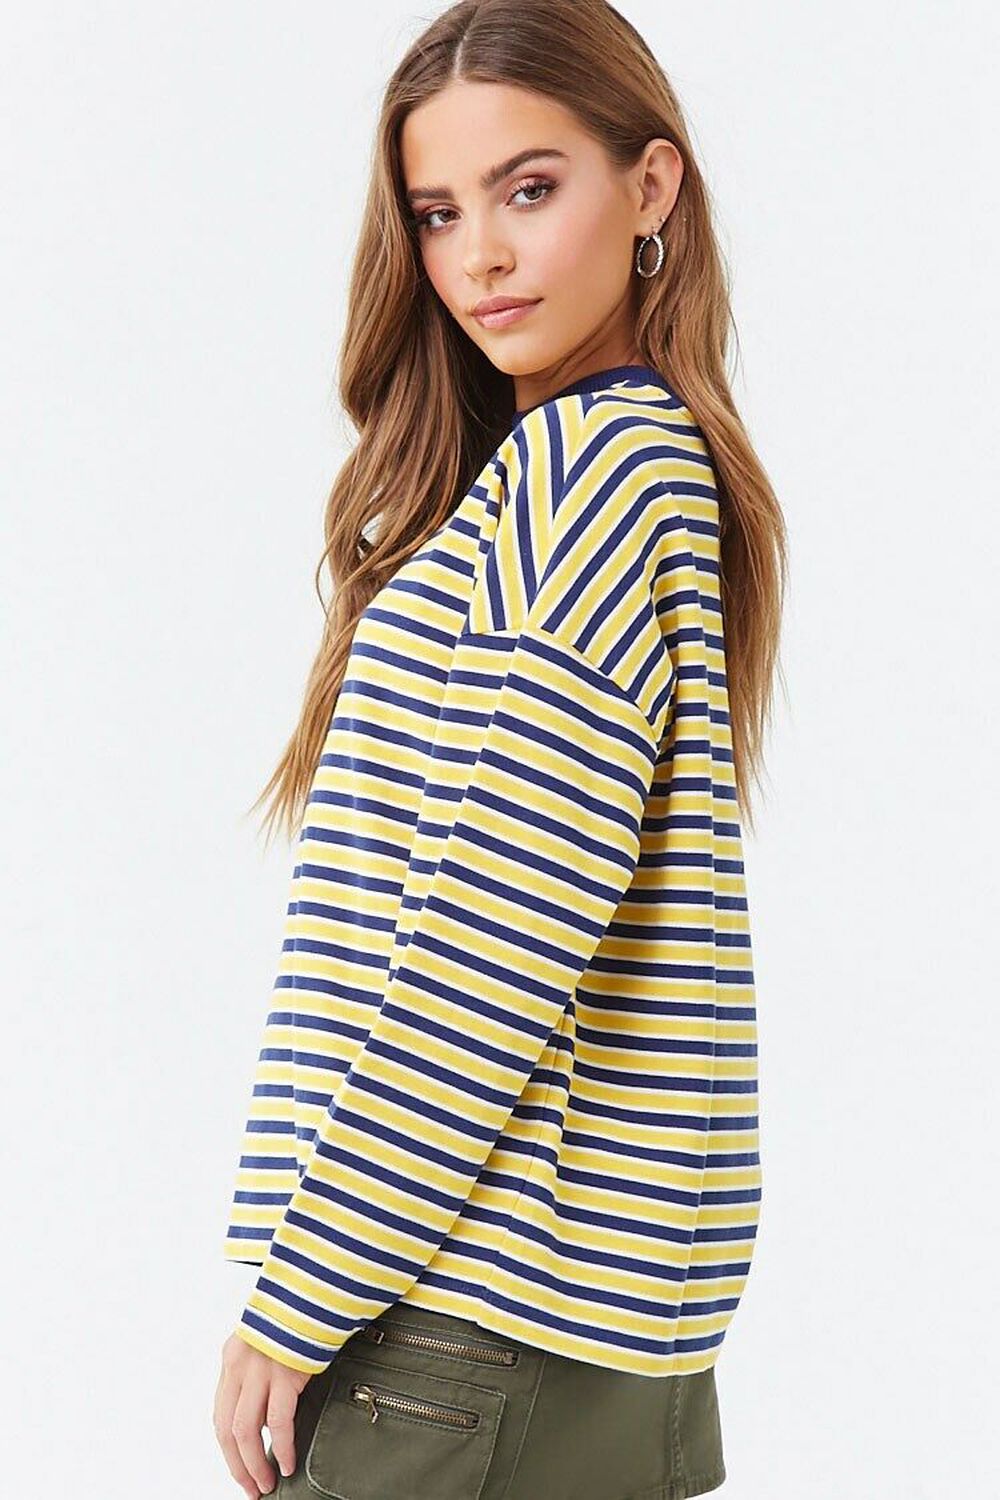 NAVY/YELLOW Striped Boxy Sweatshirt, image 2